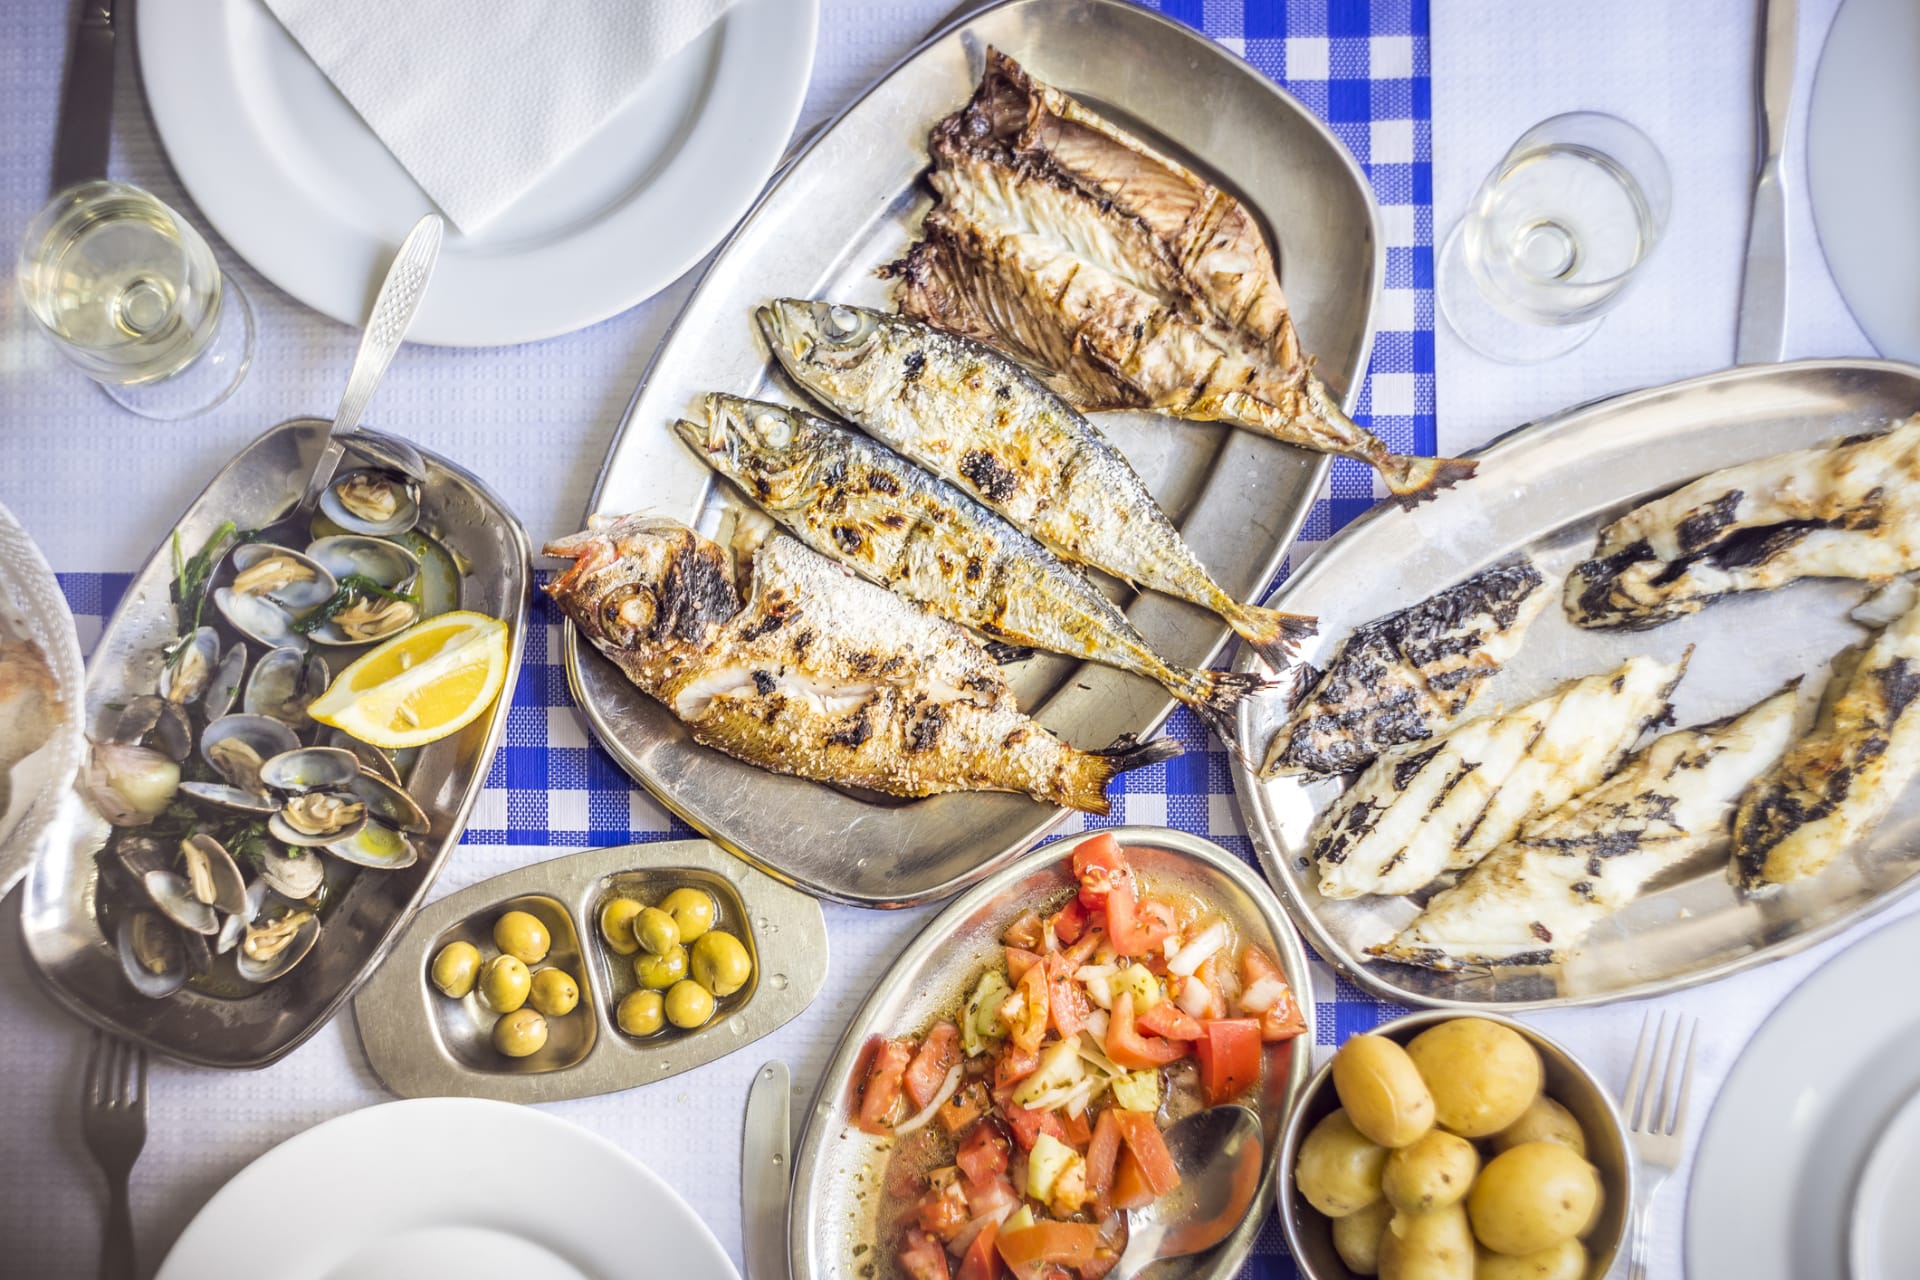 Ryby a mořské plody jsou dležitou součástí portugalské kuchyně